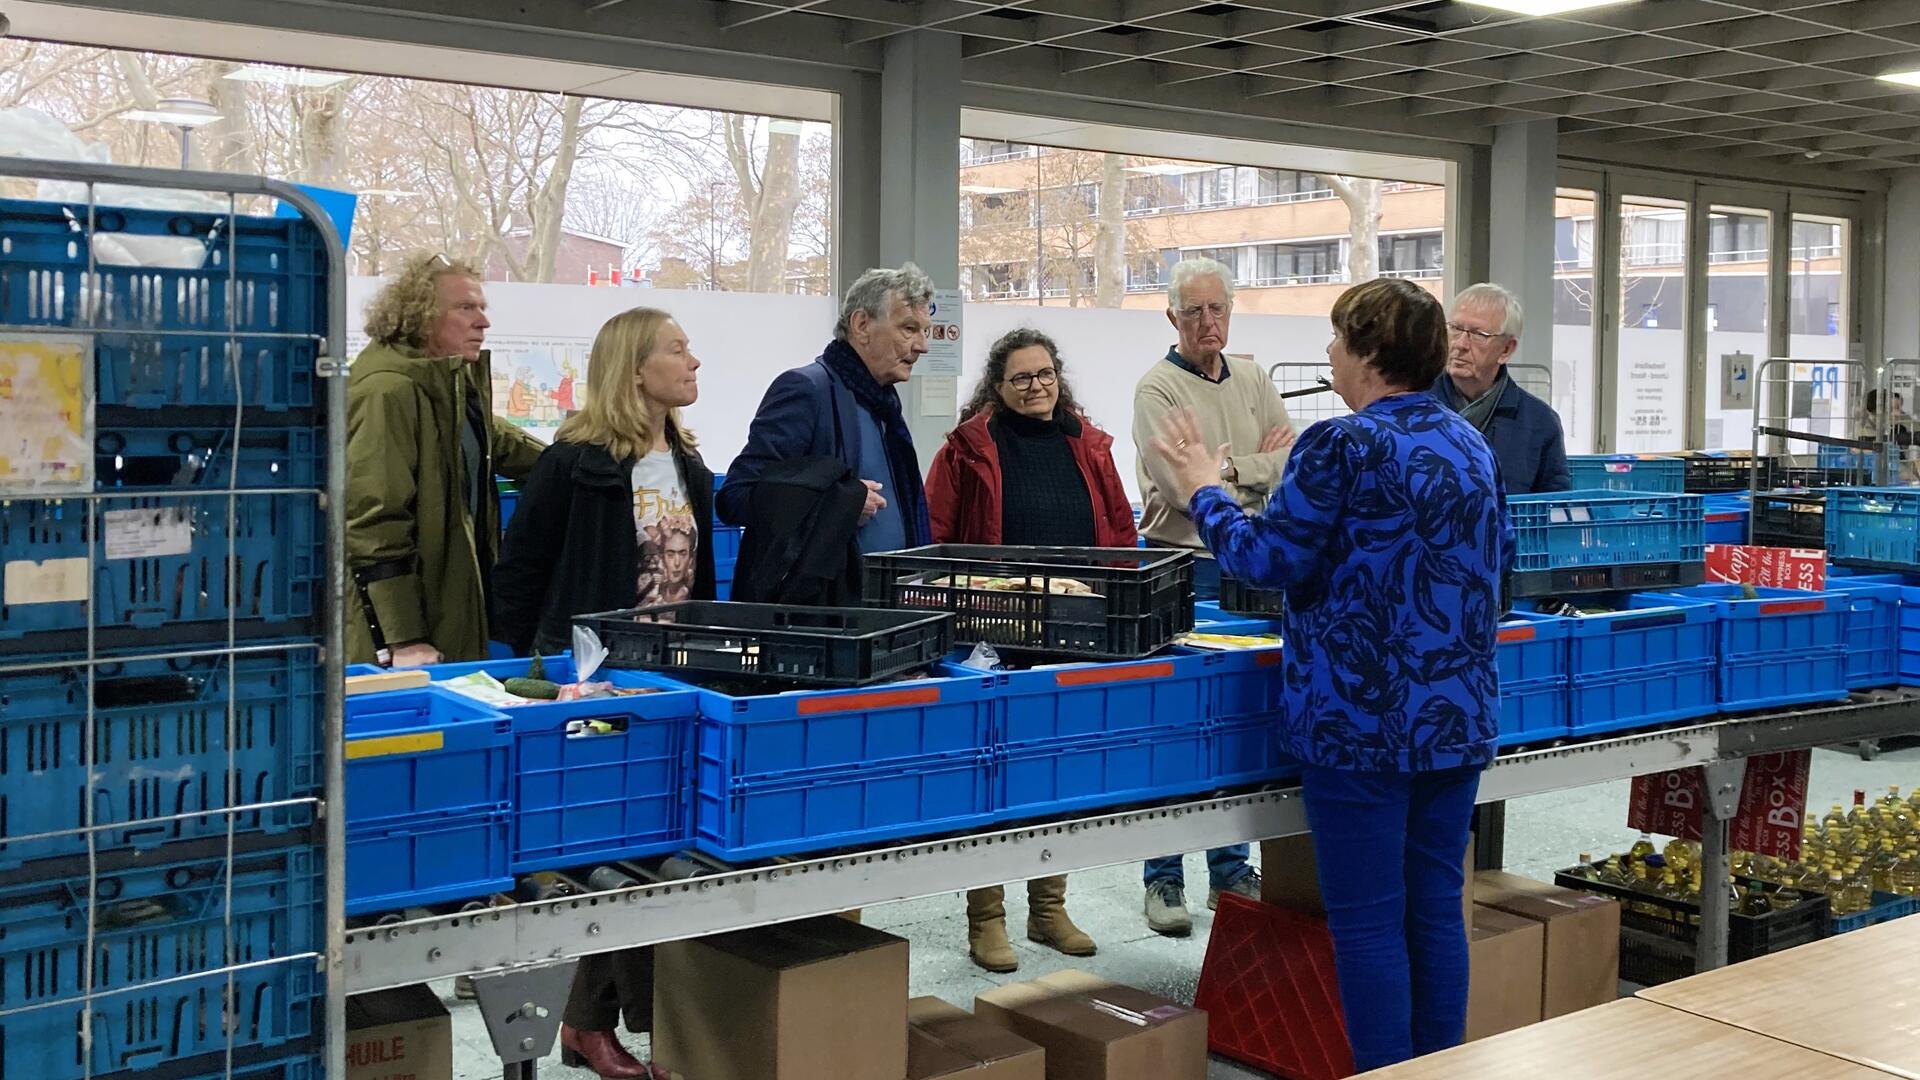 GroenLinksers bezoeken de Voedselbank in IJmond. Ze luisteren naar een vrouw die voor een rij blauwe kratten op een tafel uitleg geeft over de voedselinzameling en verdeling in kratten.